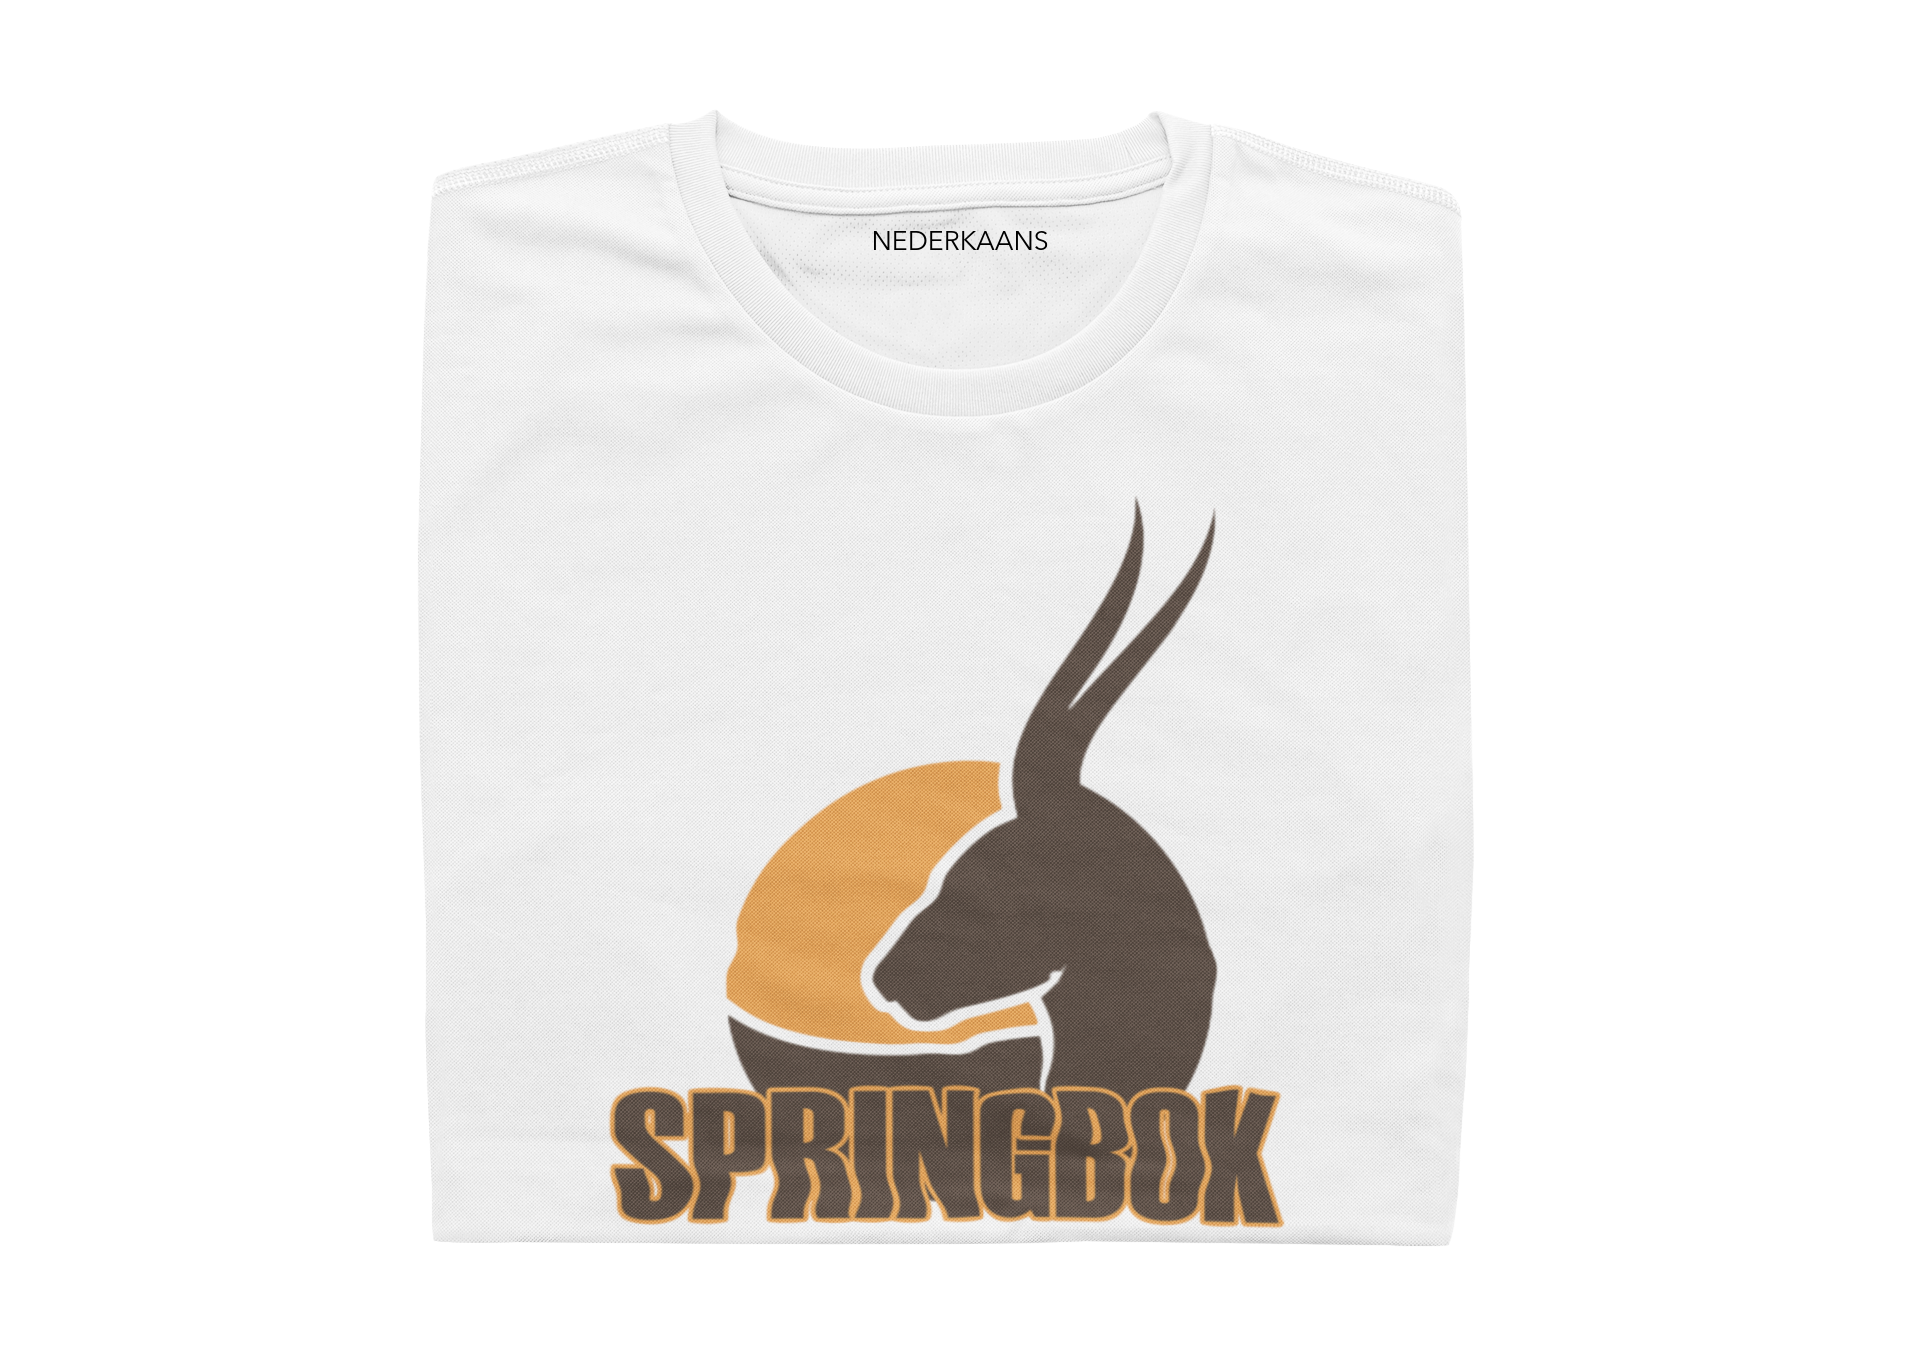 Springbok - Mens Shirt